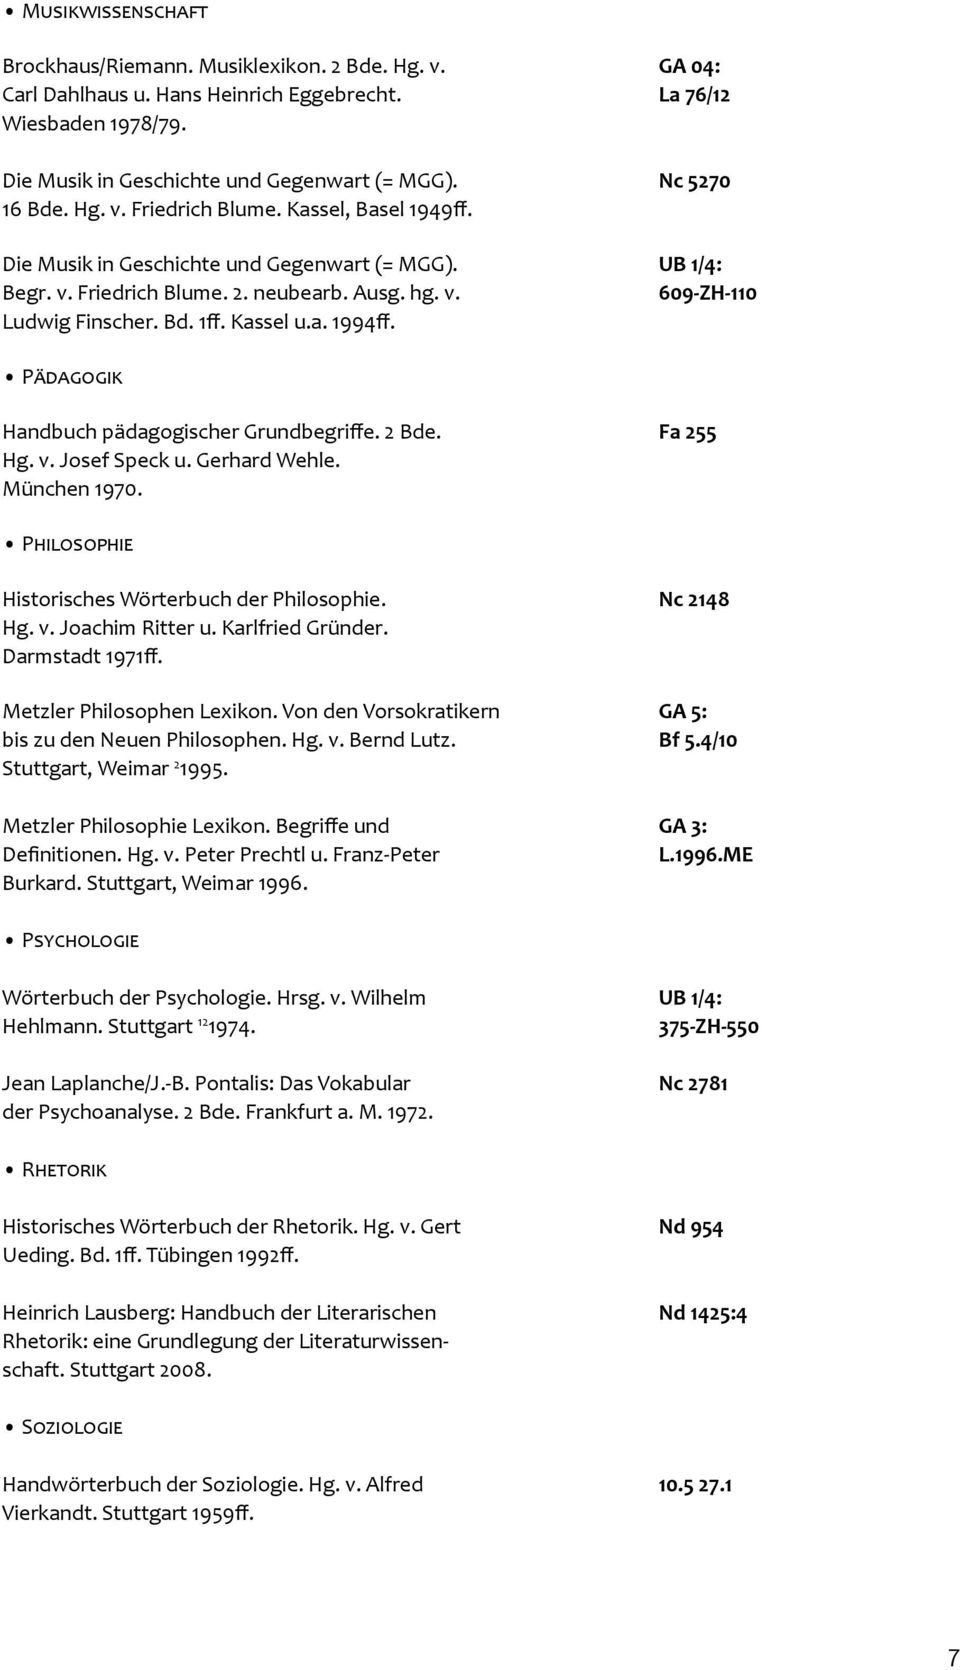 Kassel u.a. 1994ff. Pädagogik Handbuch pädagogischer Grundbegriffe. 2 Bde. Fa 255 Hg. v. Josef Speck u. Gerhard Wehle. München 1970. Philosophie Historisches Wörterbuch der Philosophie. Nc 2148 Hg. v. Joachim Ritter u.